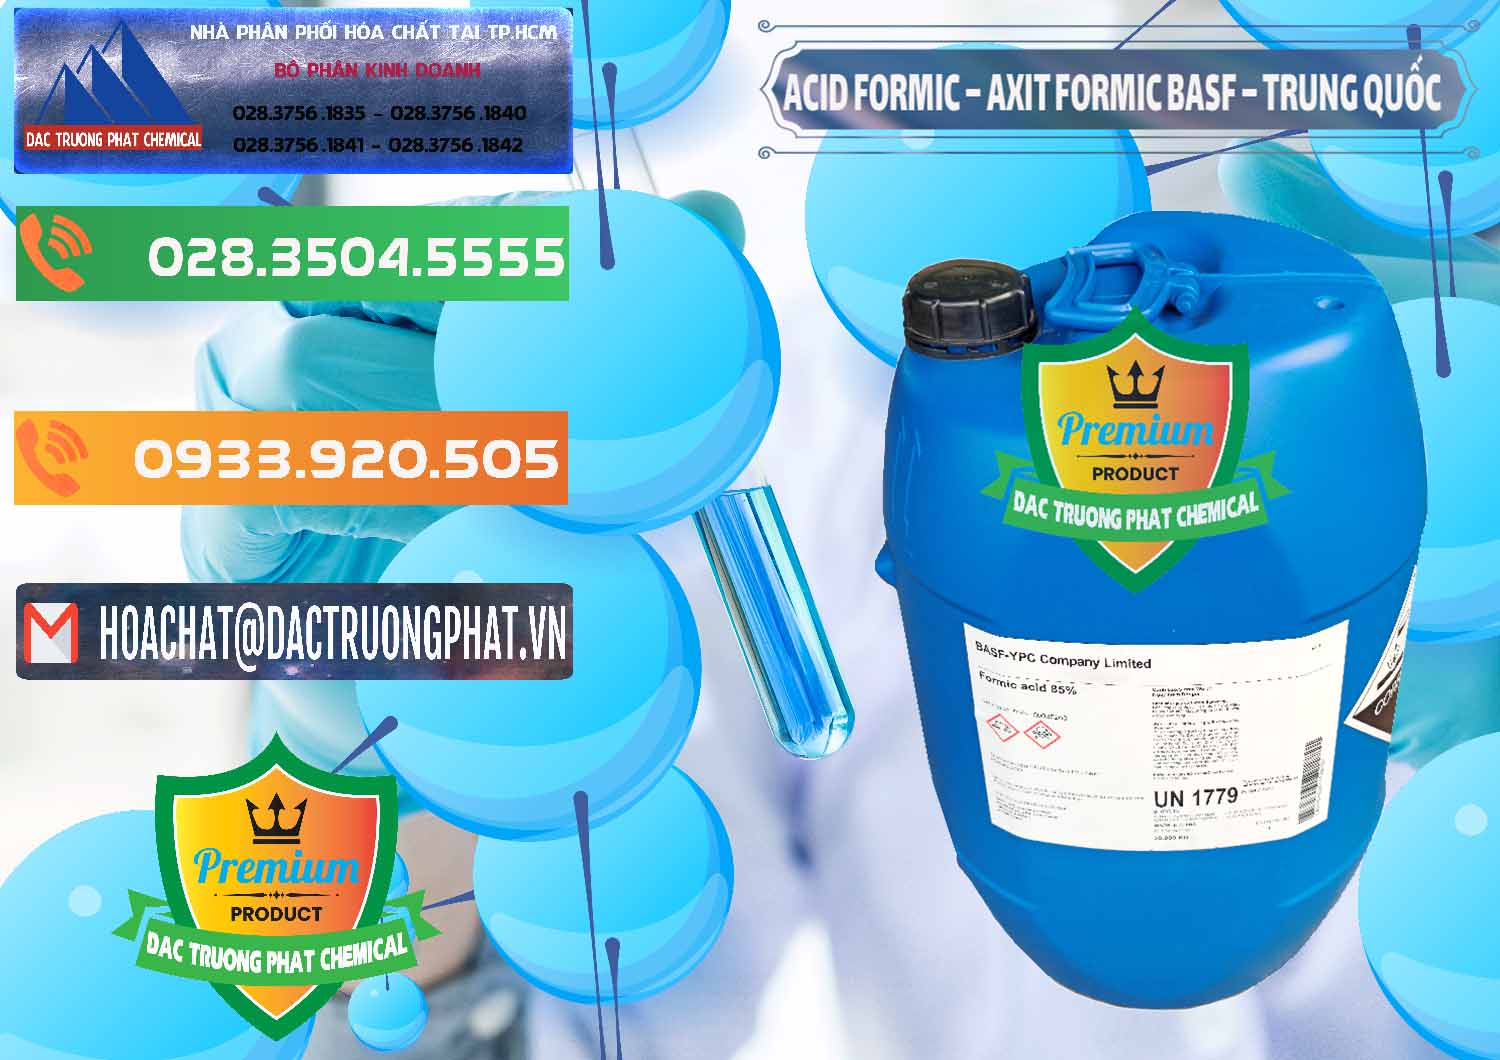 Nơi chuyên phân phối & bán Acid Formic - Axit Formic BASF Trung Quốc China - 0025 - Công ty chuyên phân phối ( nhập khẩu ) hóa chất tại TP.HCM - hoachatxulynuoc.com.vn